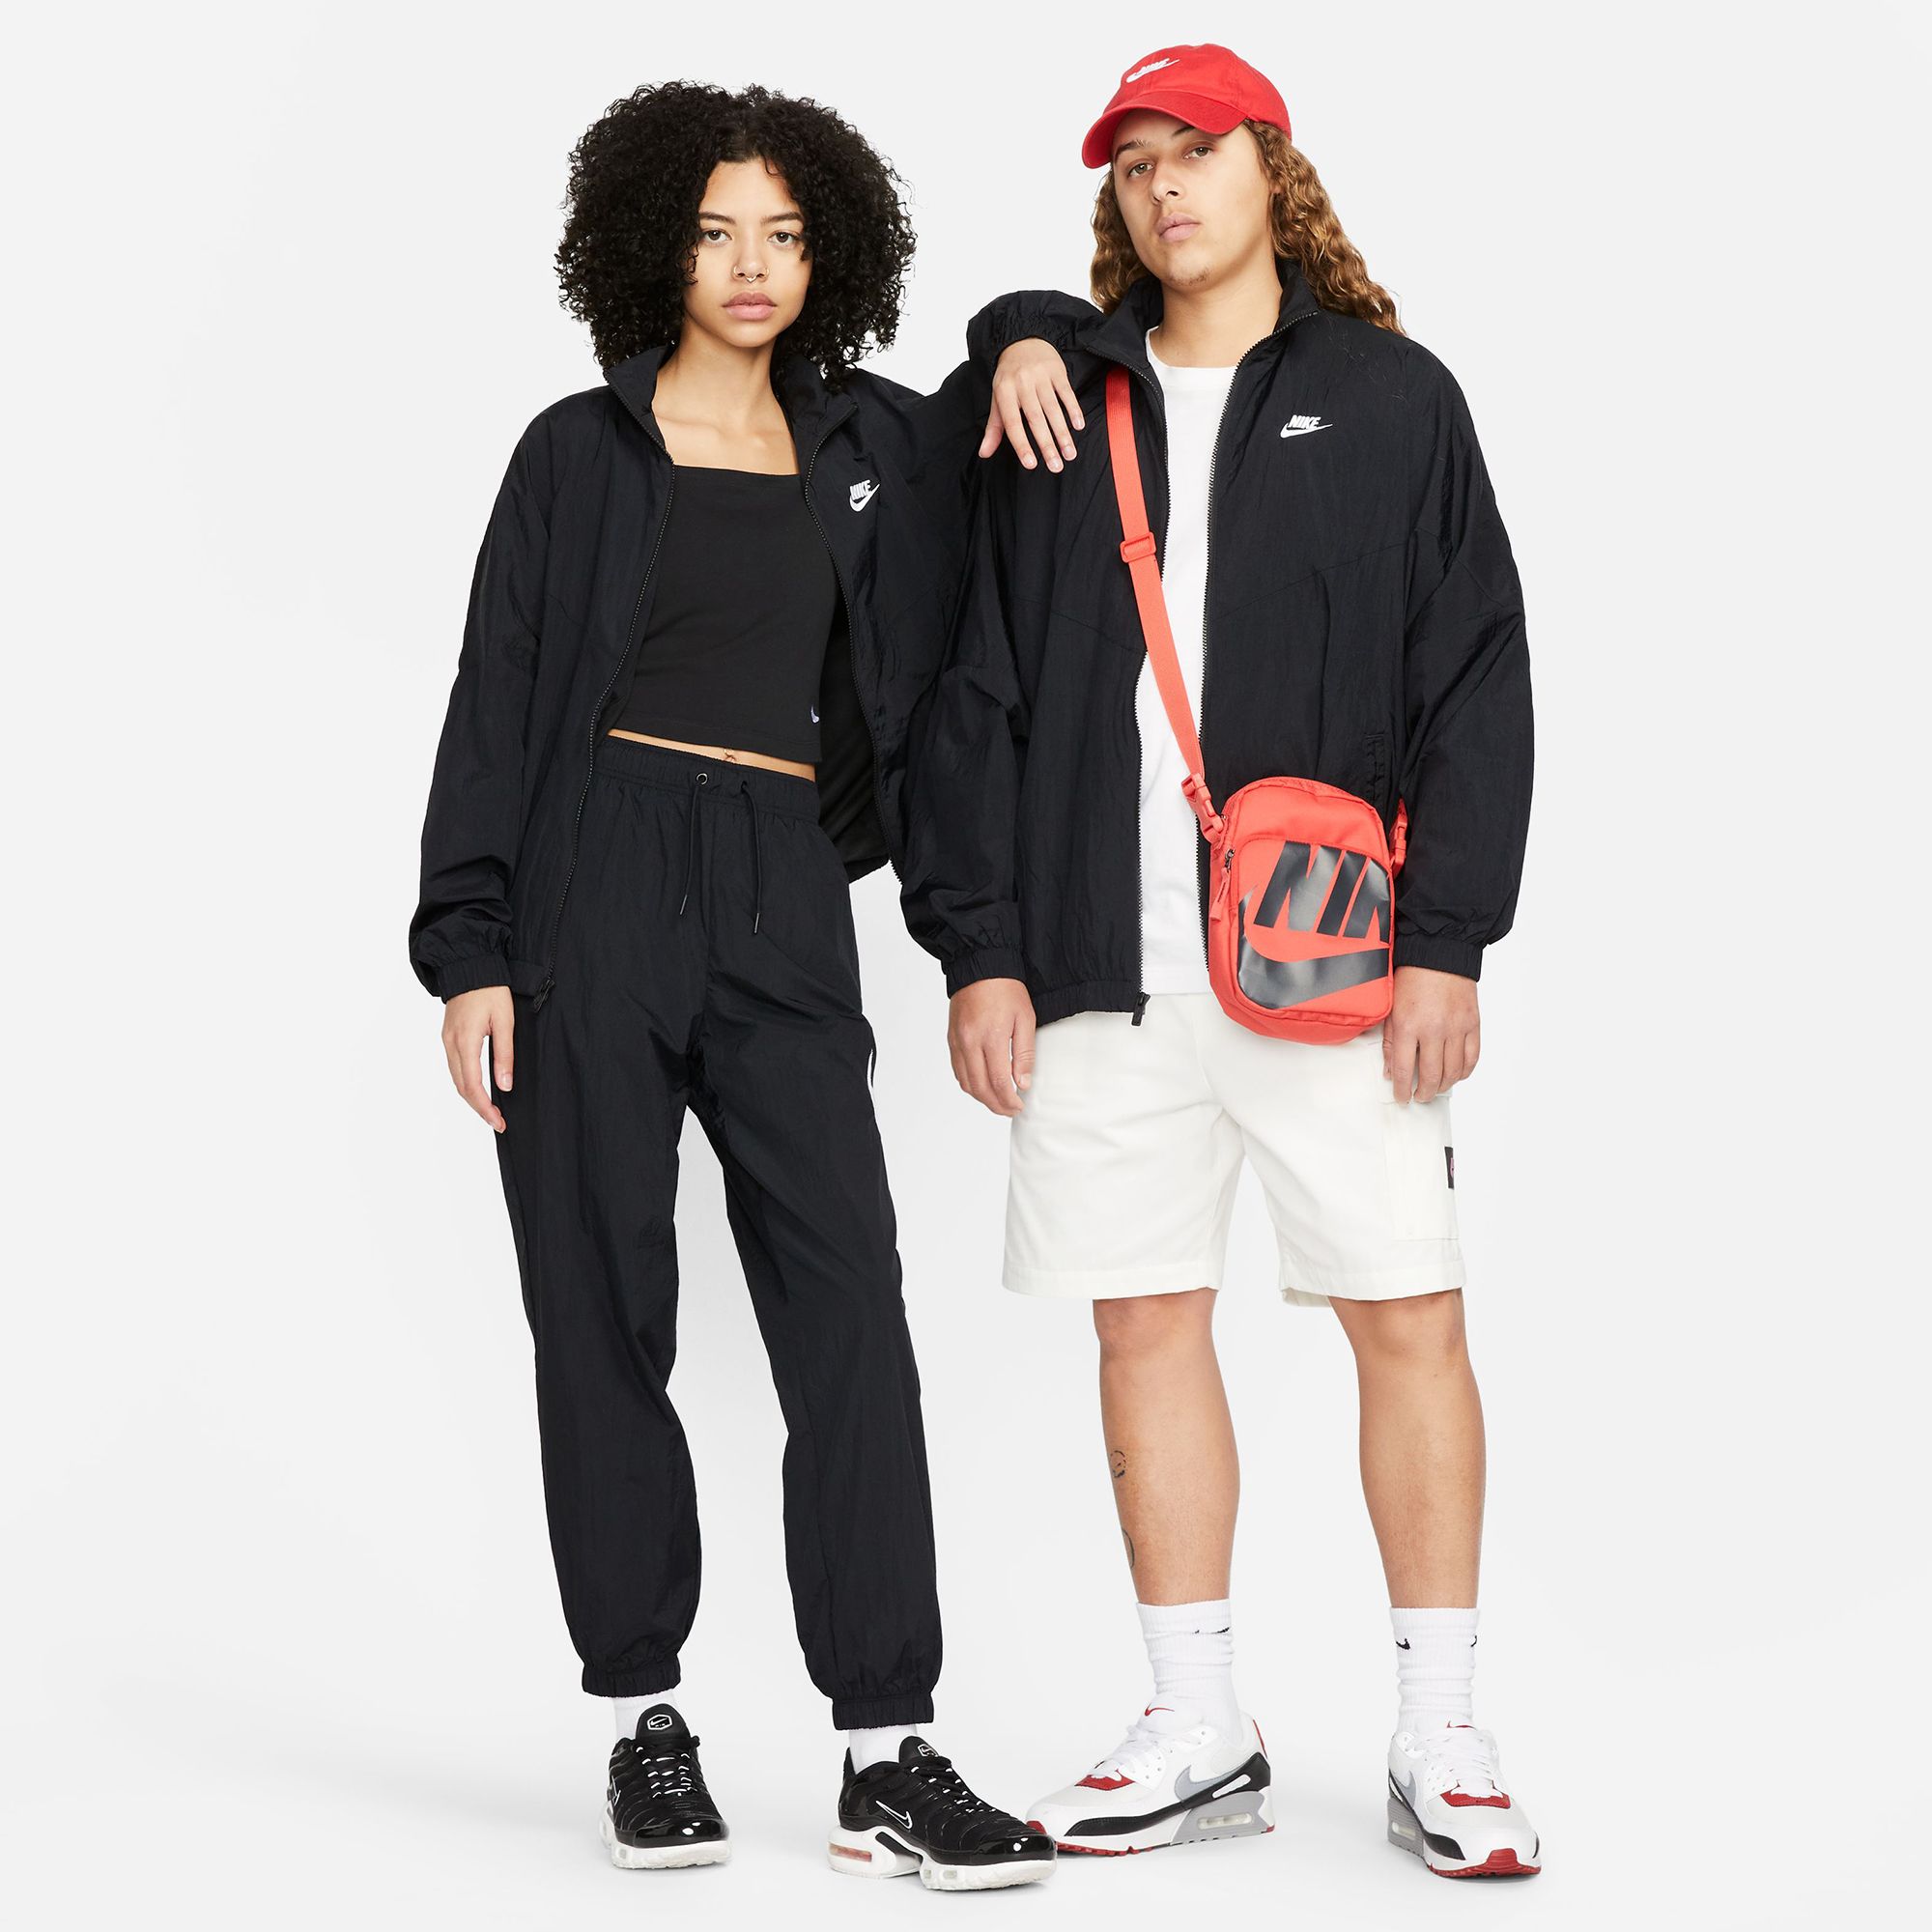 Nike Women's Sportswear Essential Windrunner Woven Jacket